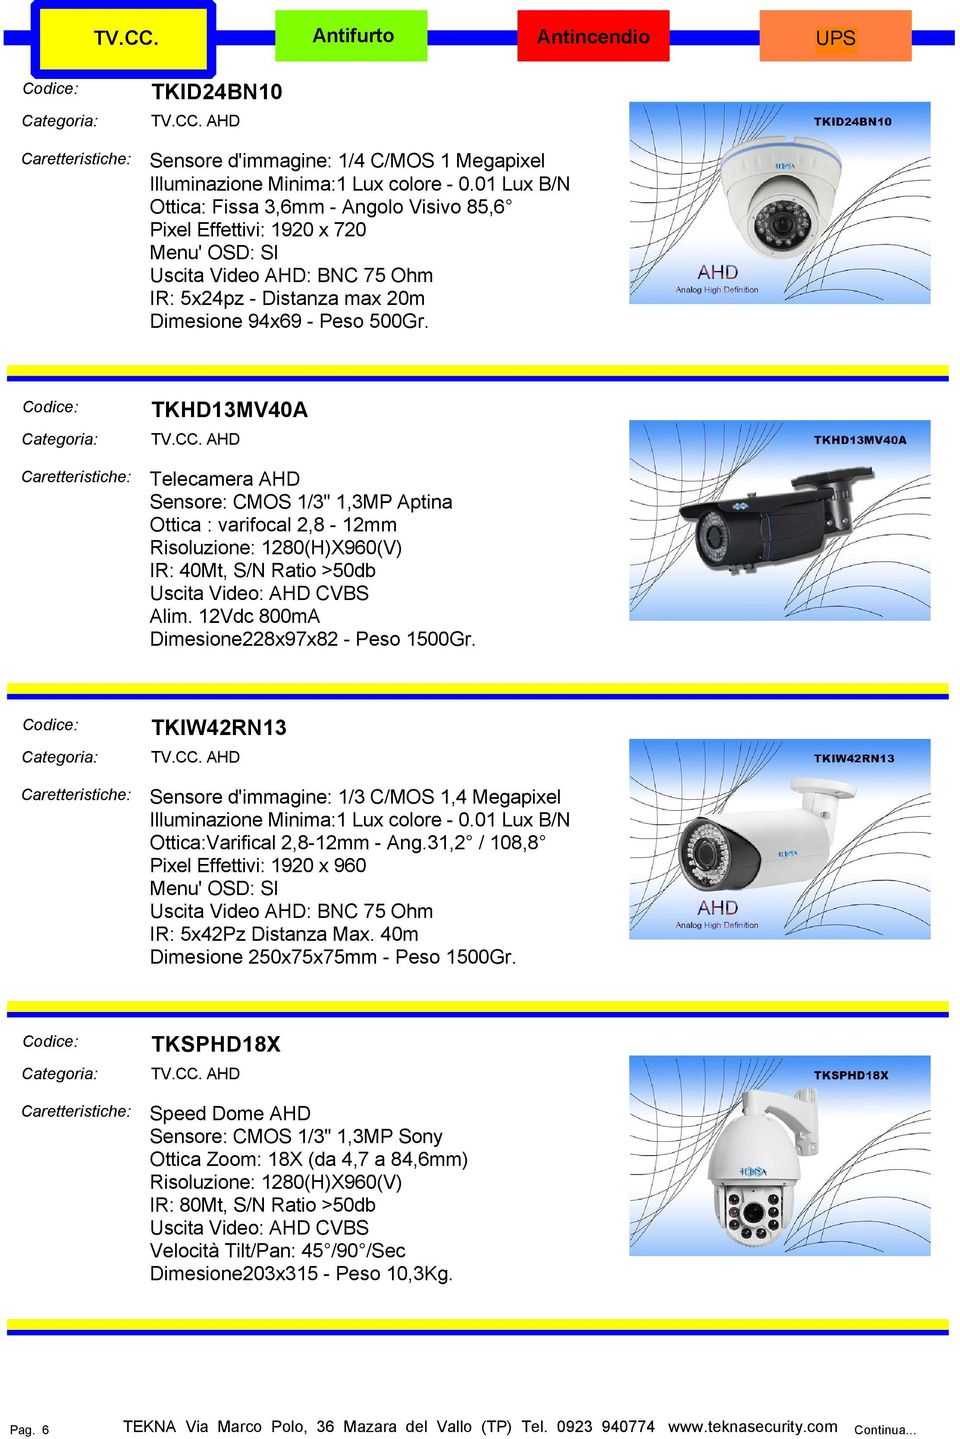 TKHD13MV40A AHD Telecamera AHD Sensore: CMOS 1/3" 1,3MP Aptina Ottica : varifocal 2,8-12mm Risoluzione: 1280(H)X960(V) IR: 40Mt, S/N Ratio >50db Uscita Video: AHD CVBS Alim.